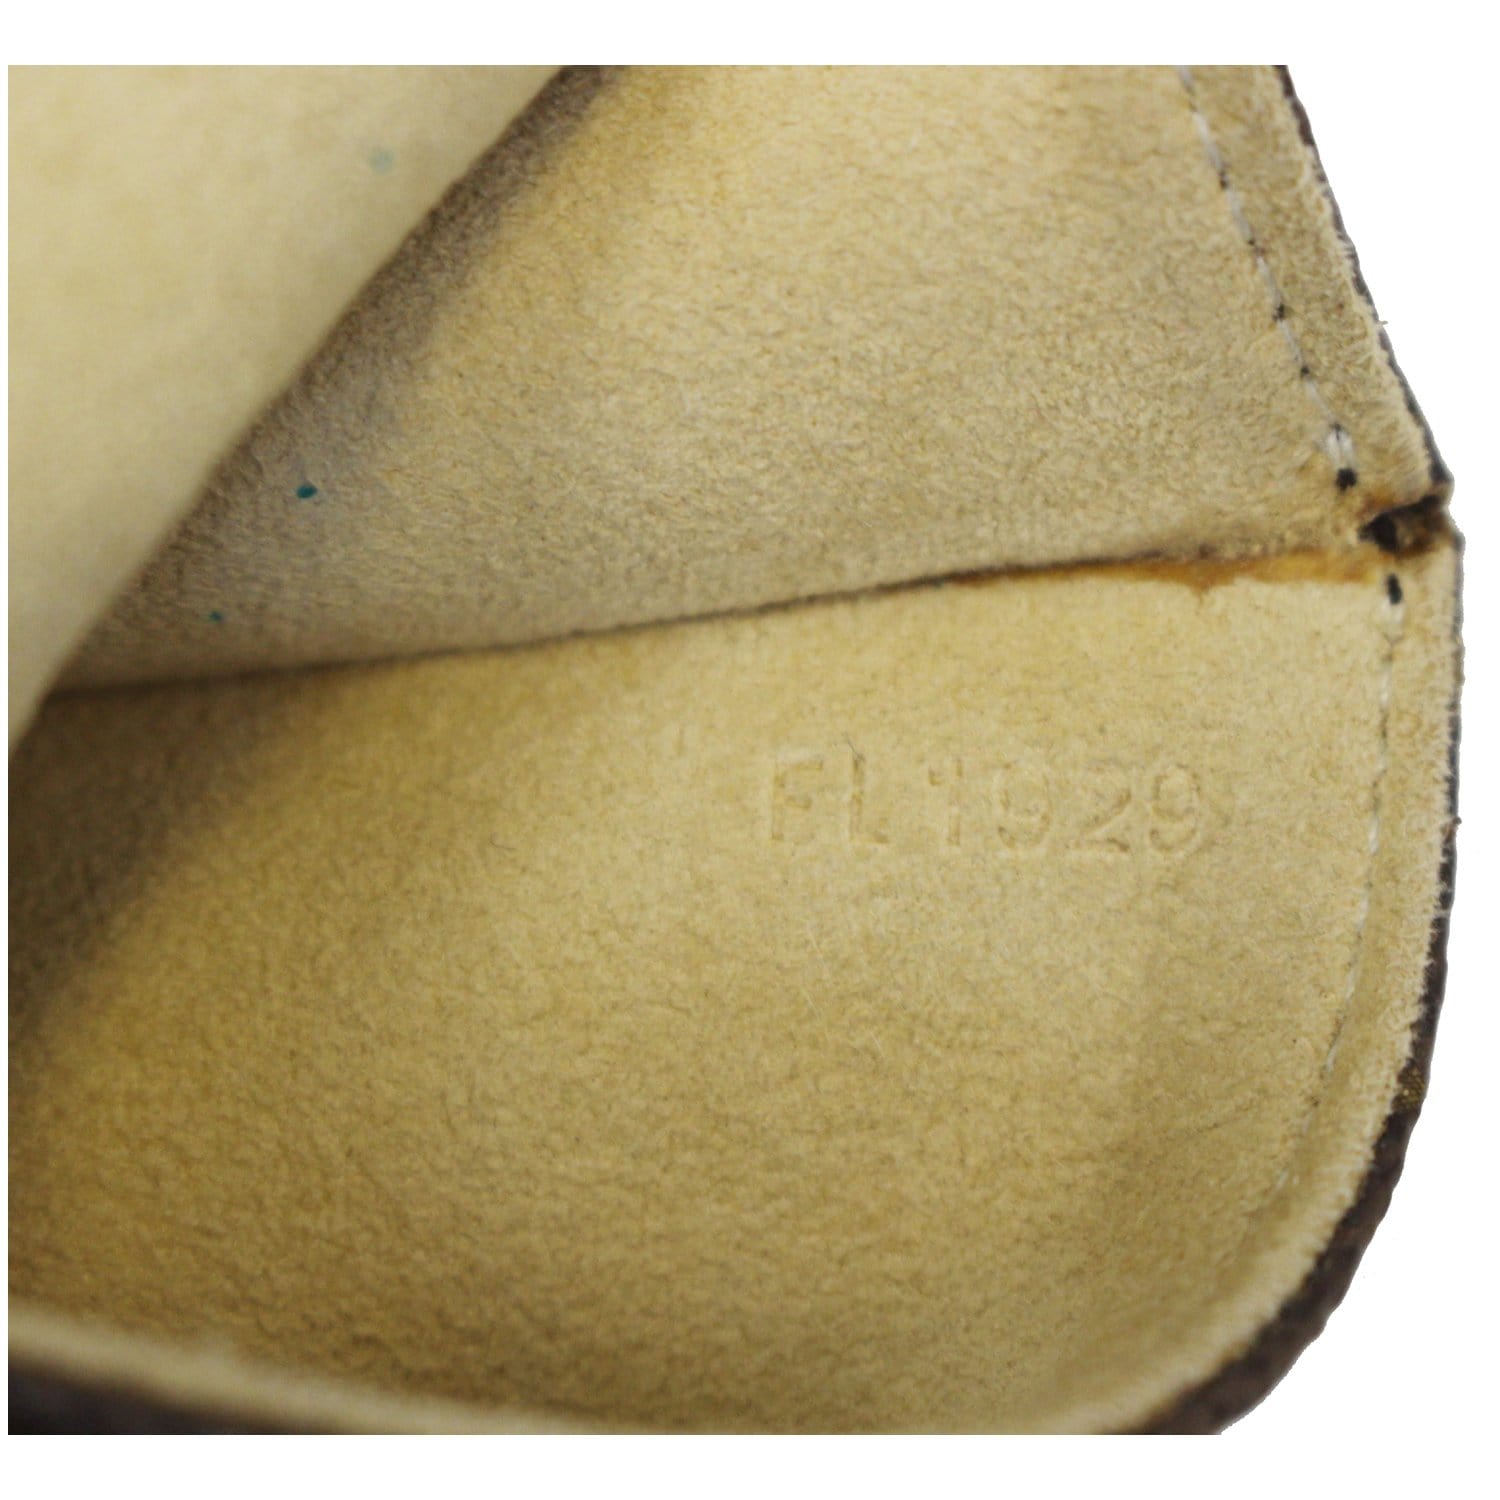 Louis Vuitton Monogram Pochette Twin PM w/ Strap - Brown Clutches, Handbags  - LOU813564